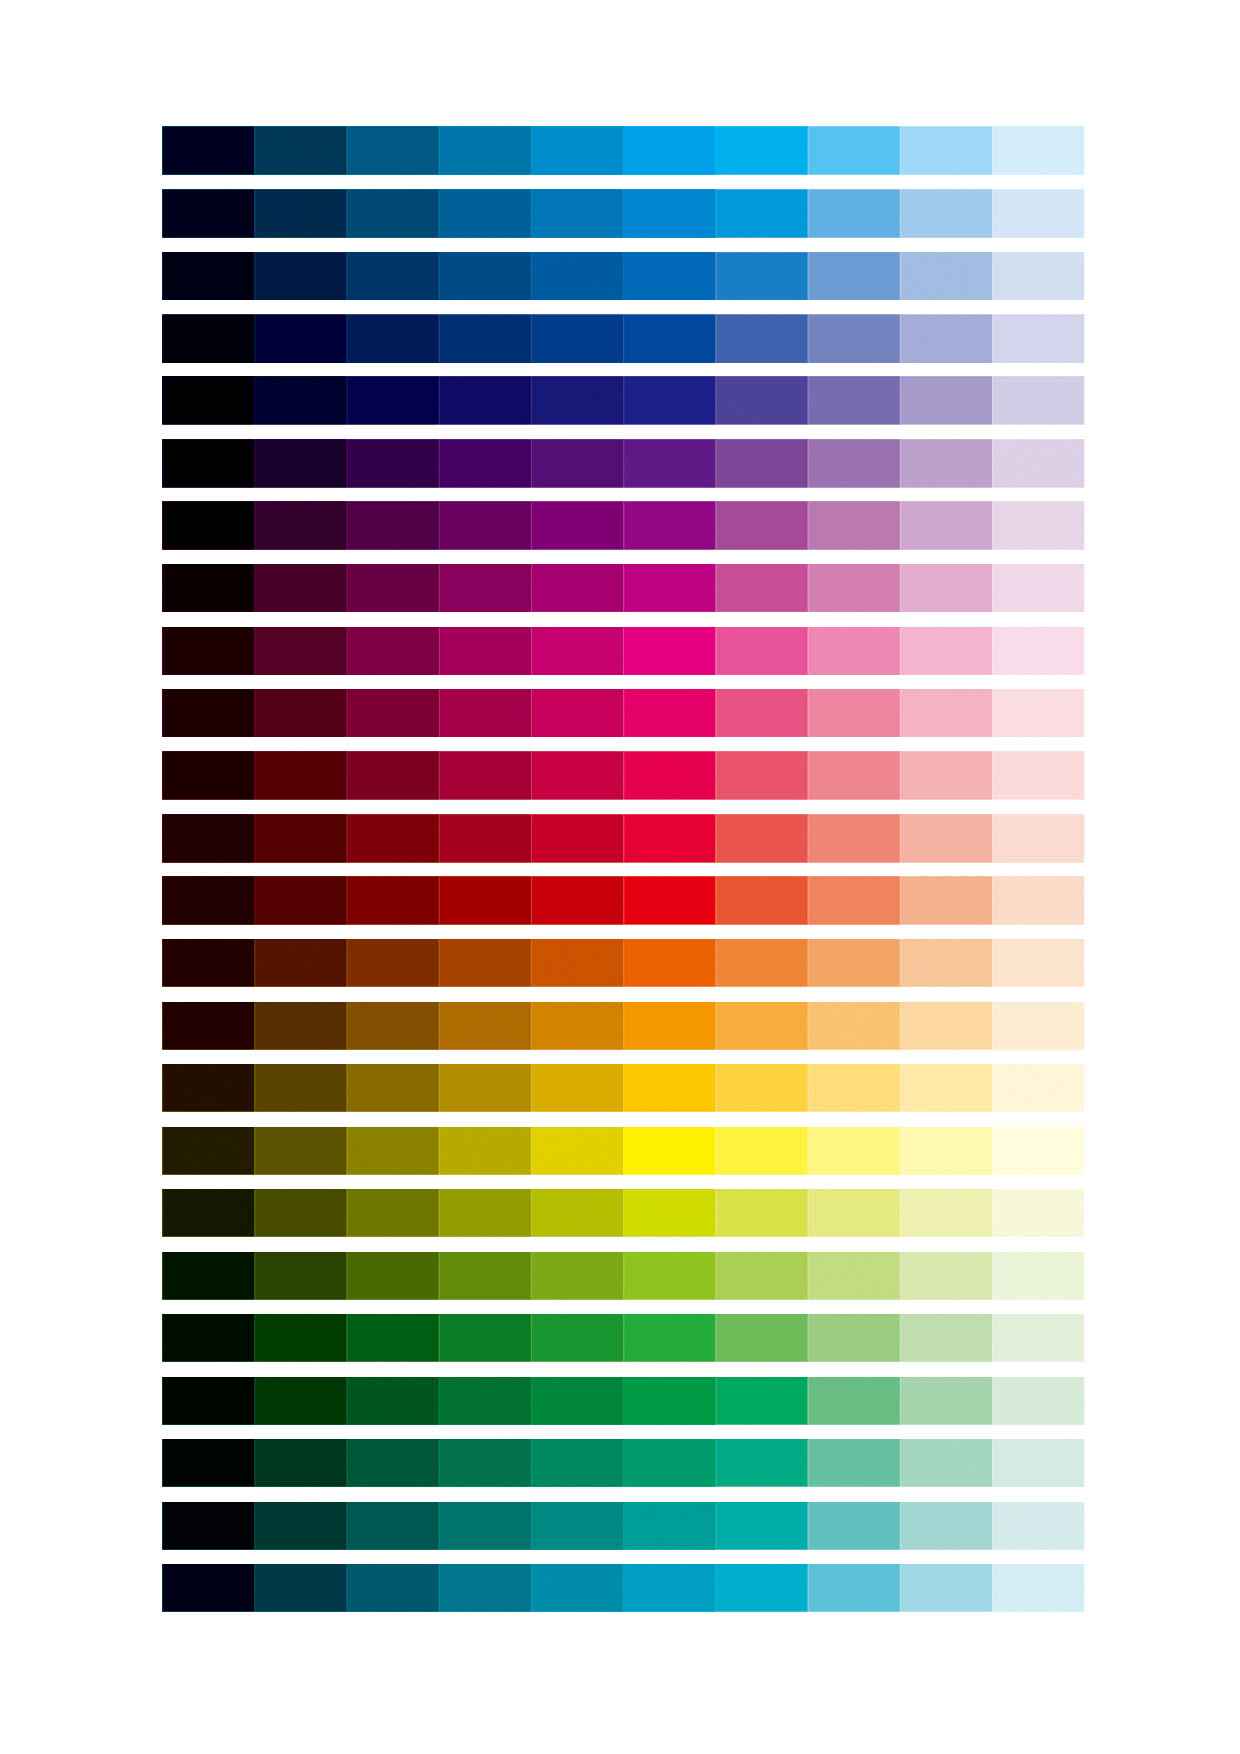 色彩明度排序图片